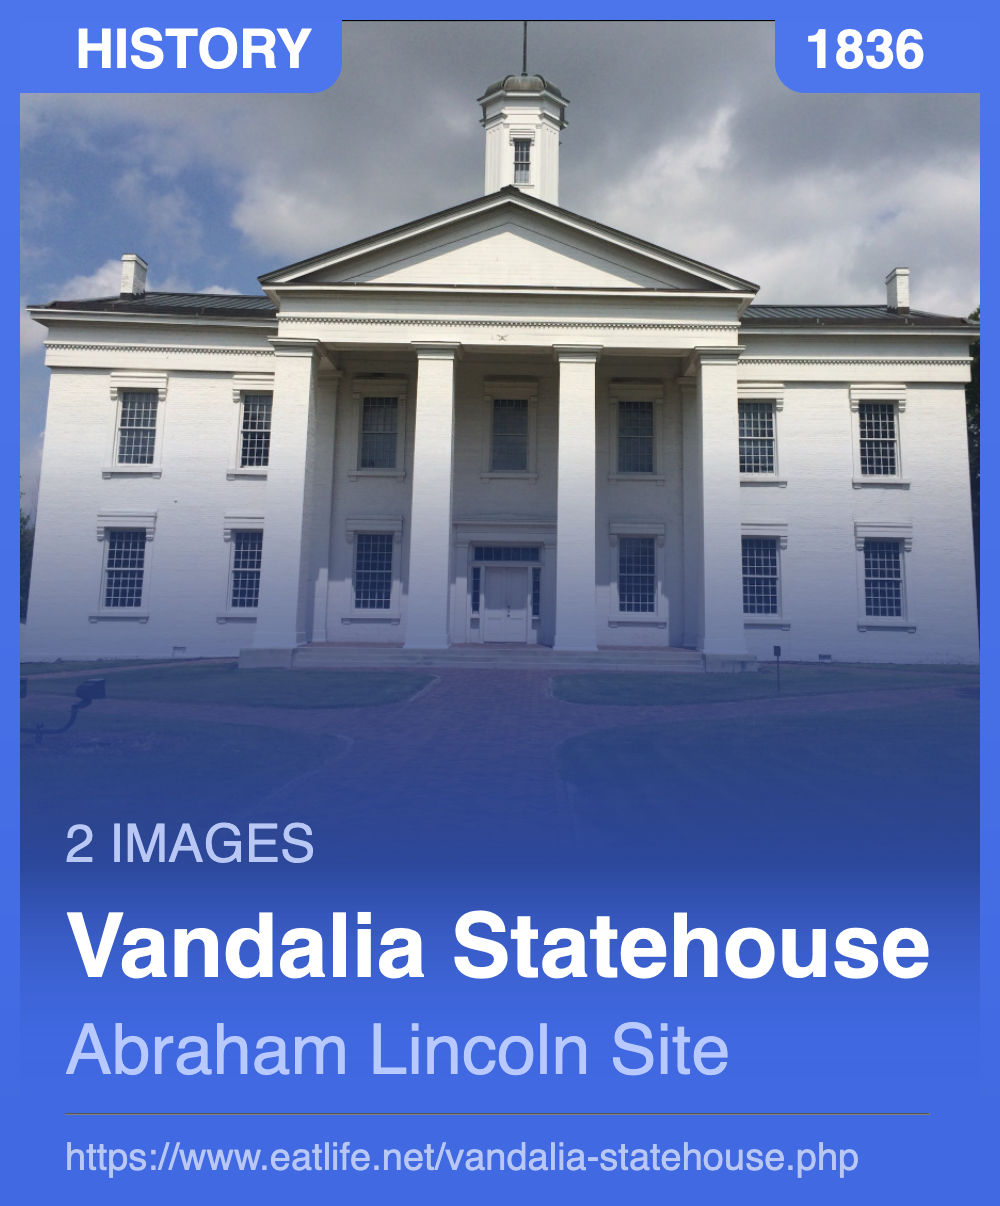 Vandalia Statehouse